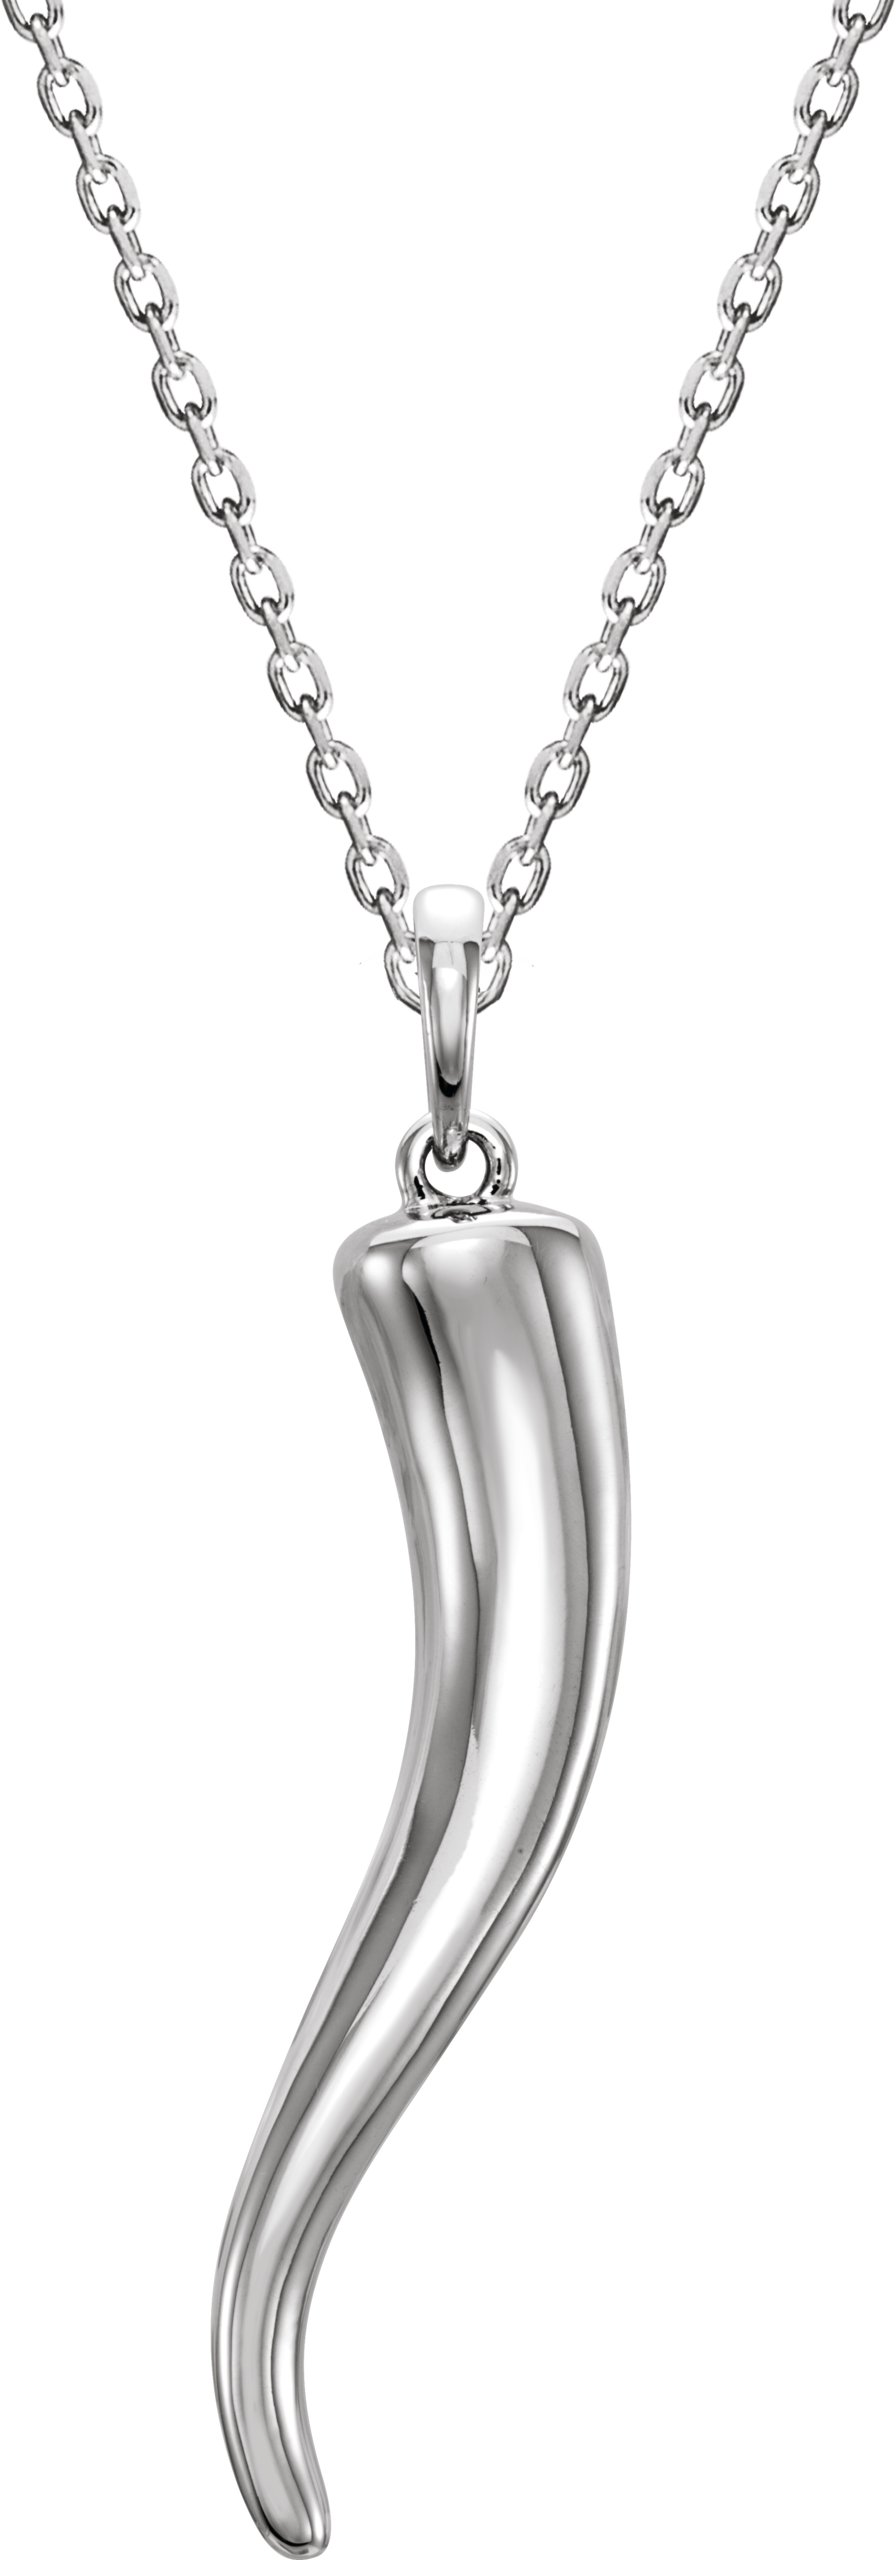 14K White Italian Horn 16-18" Necklace